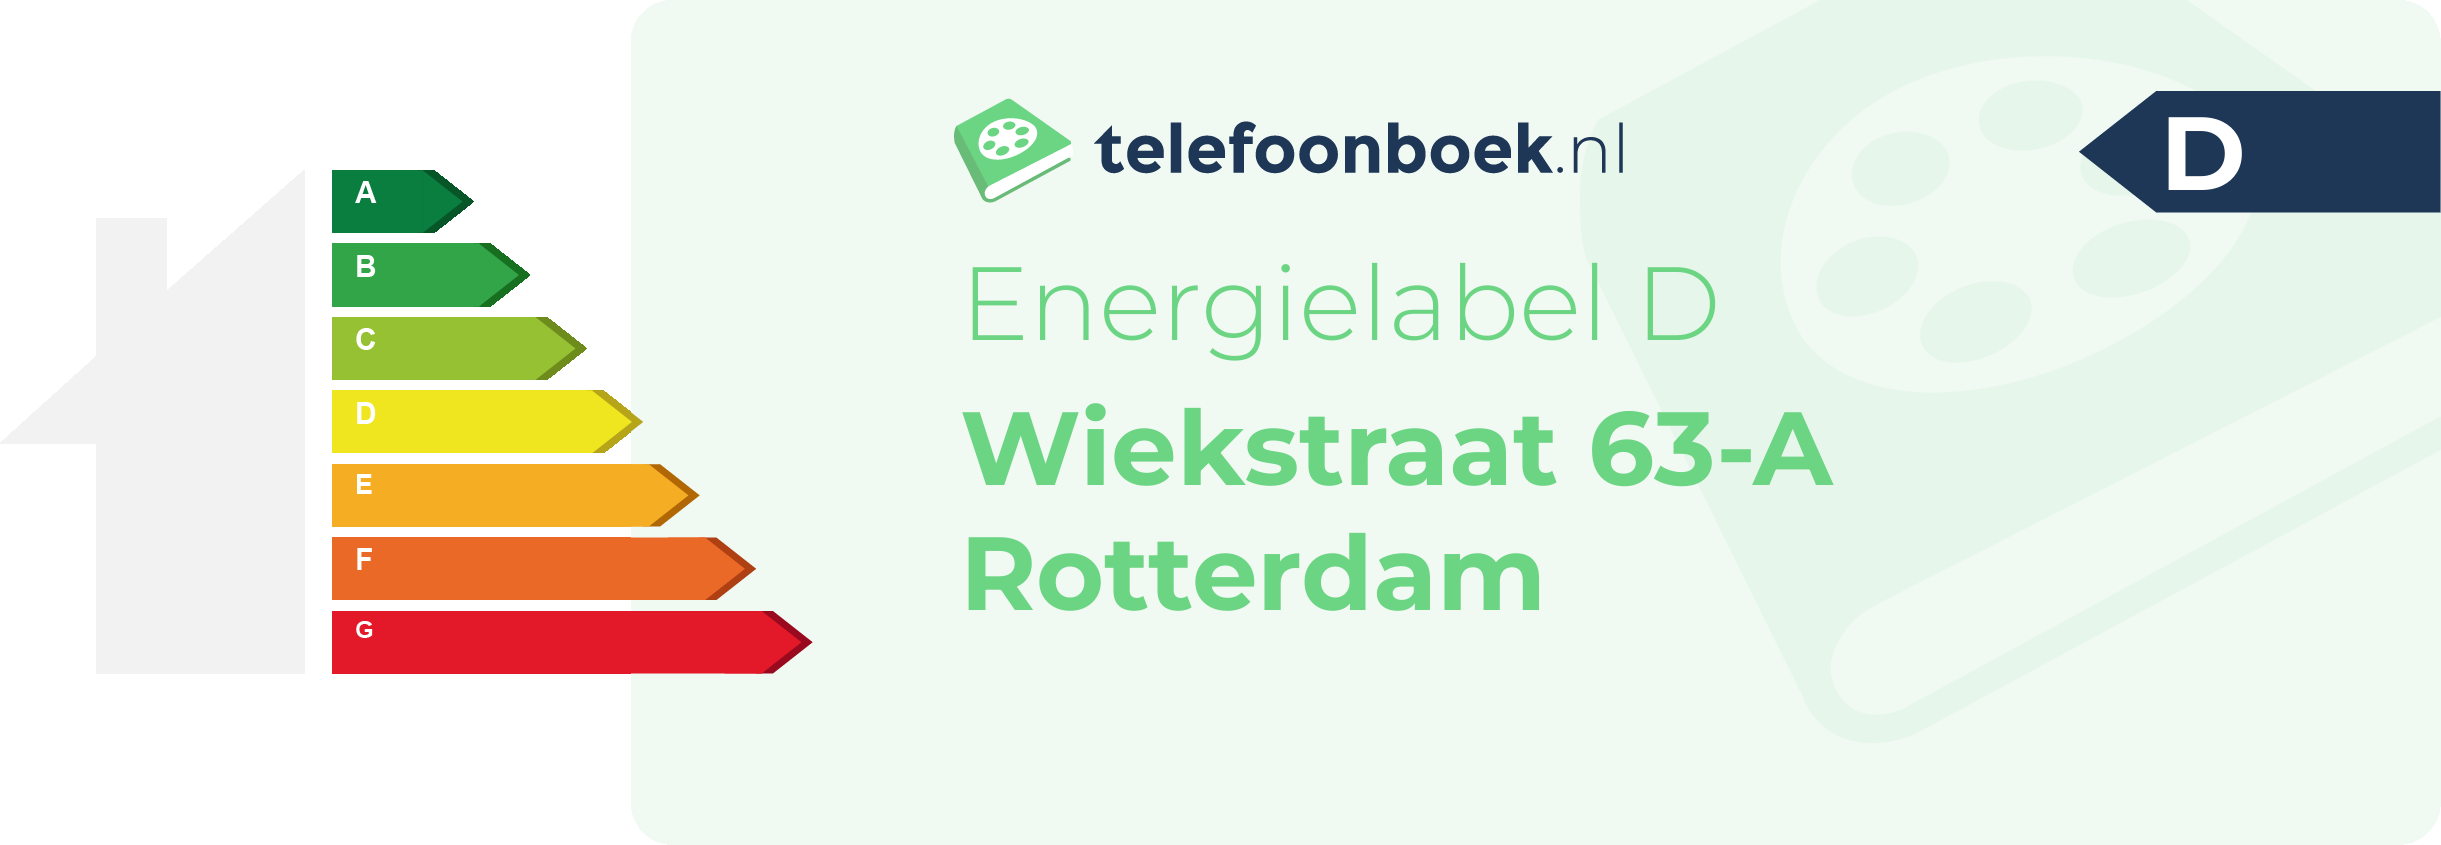 Energielabel Wiekstraat 63-A Rotterdam